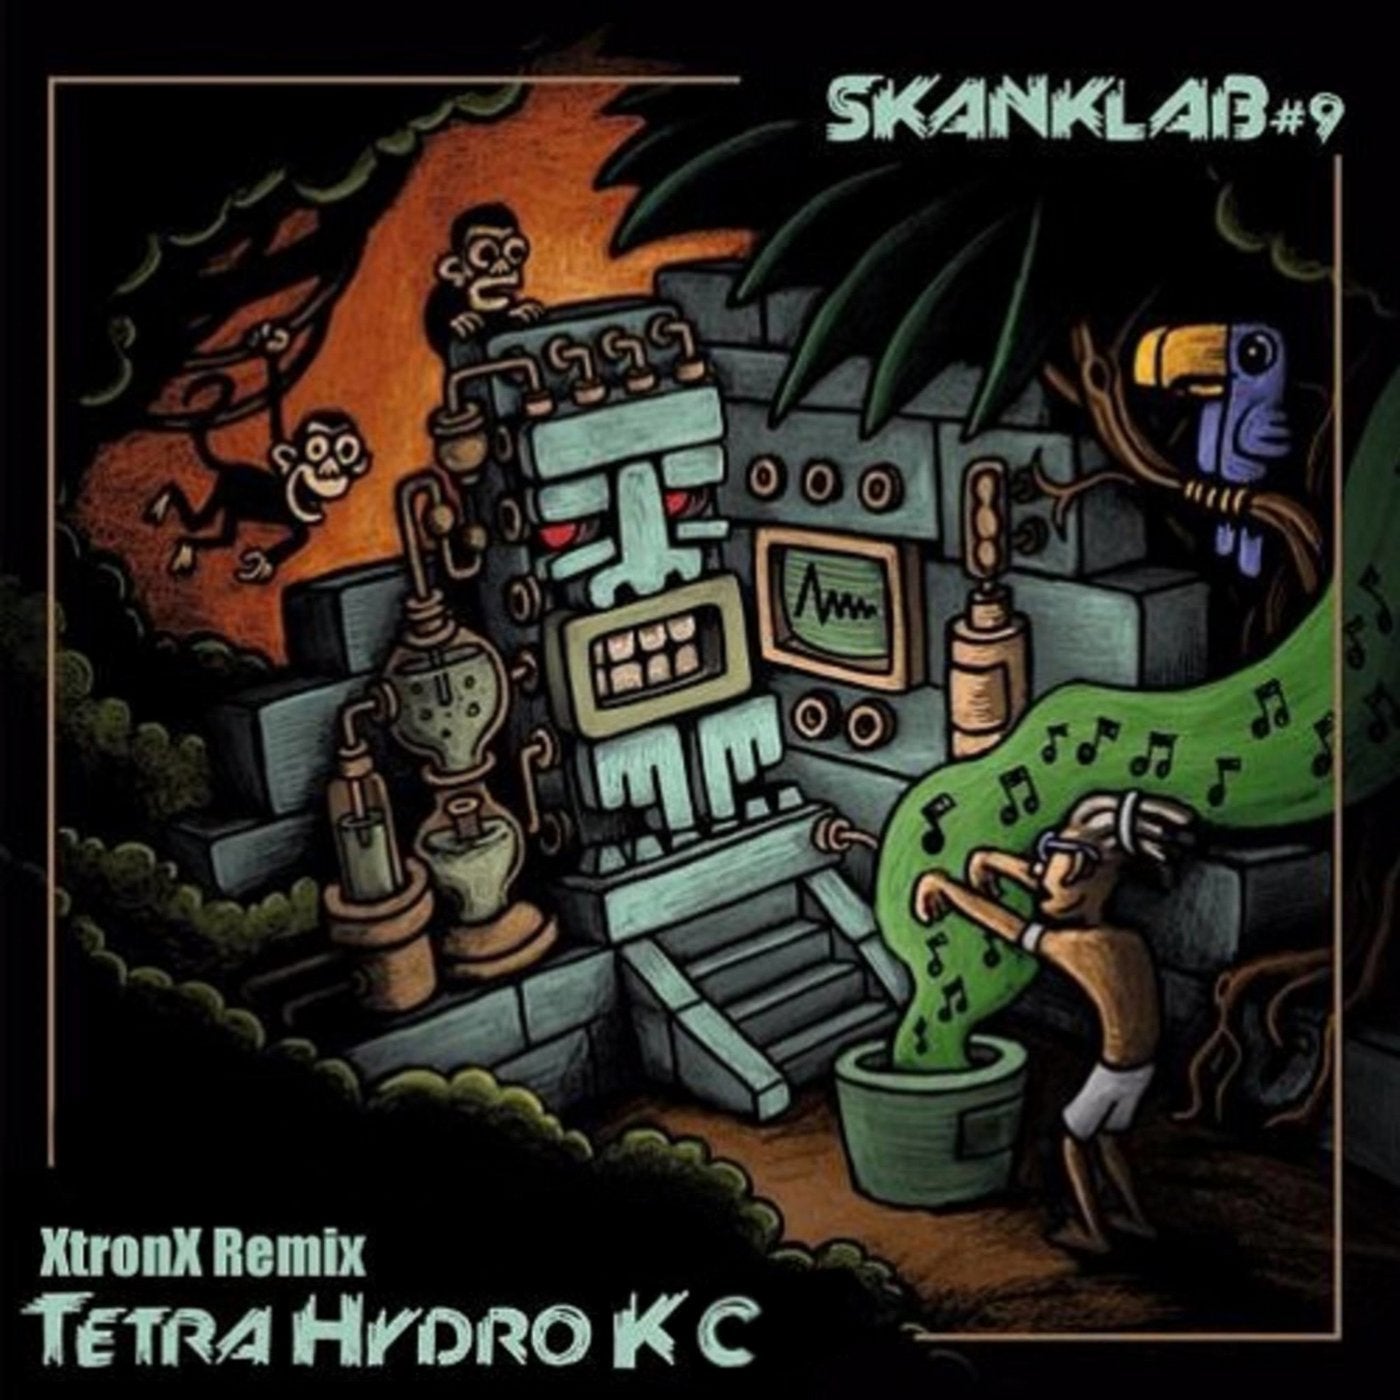 Tetrahydrok - C (Xtronx Remix)